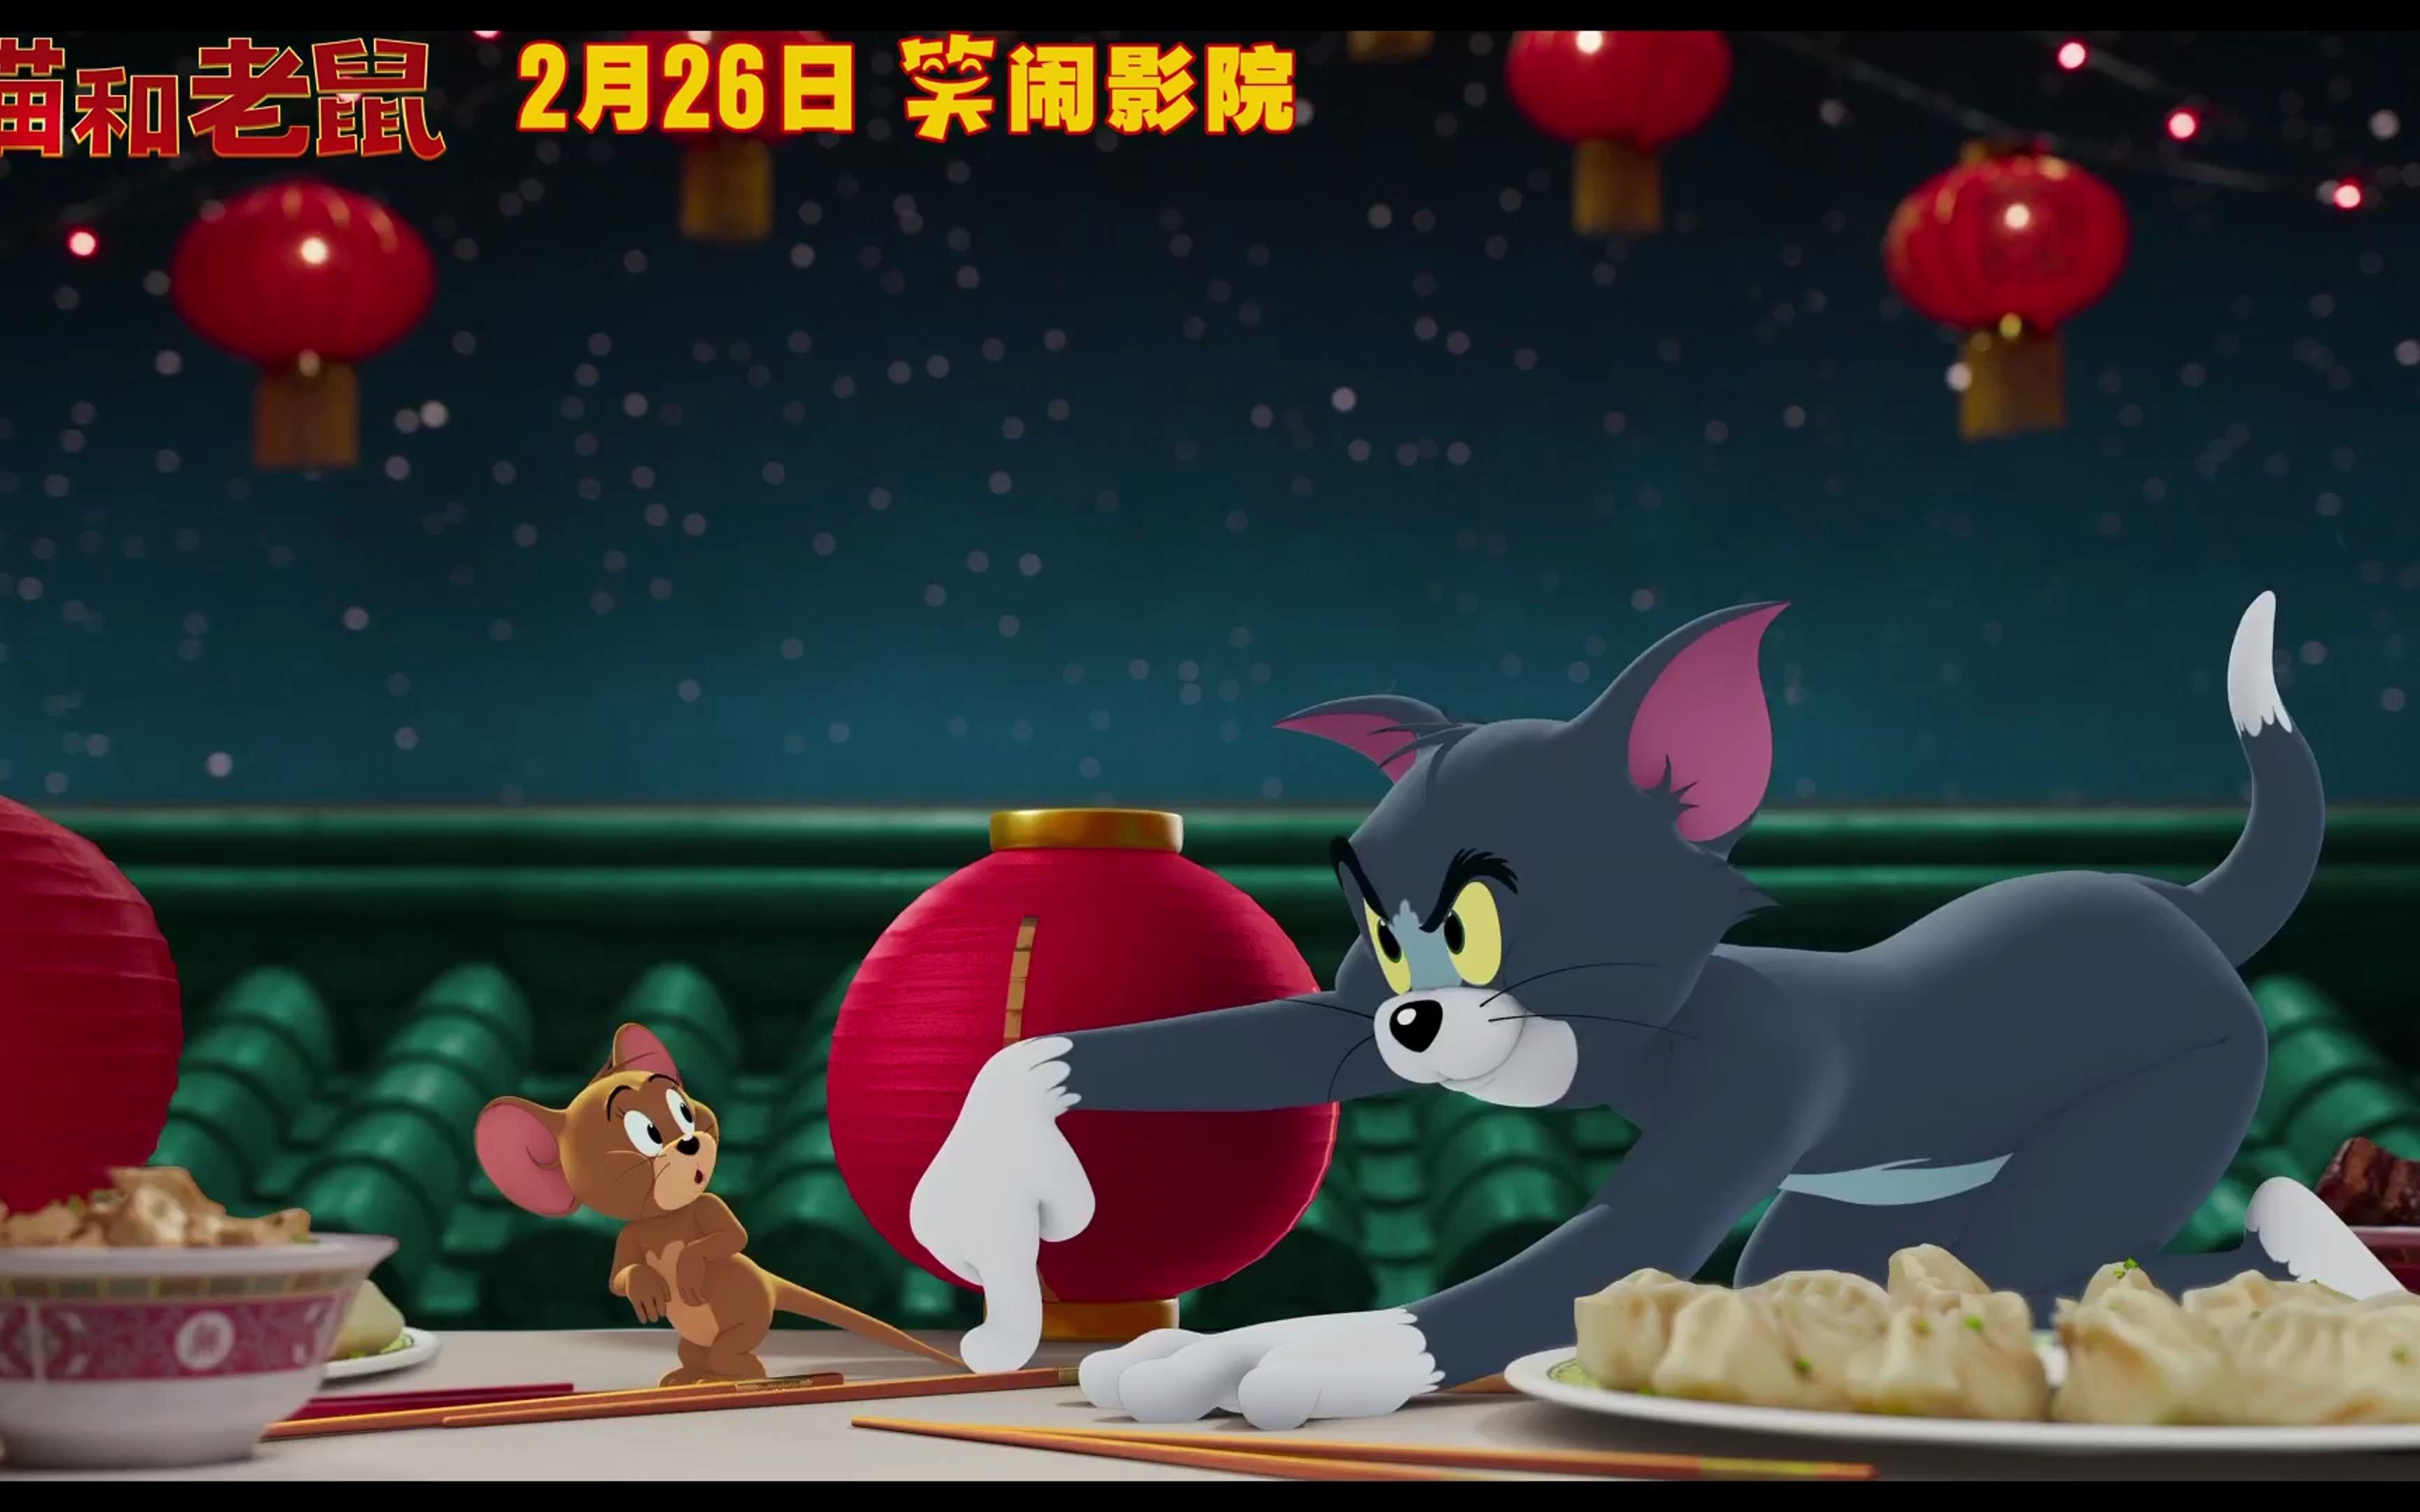 最佳损友过年互损新姿势《猫和老鼠》真人版电影中国独家贺年版预告片